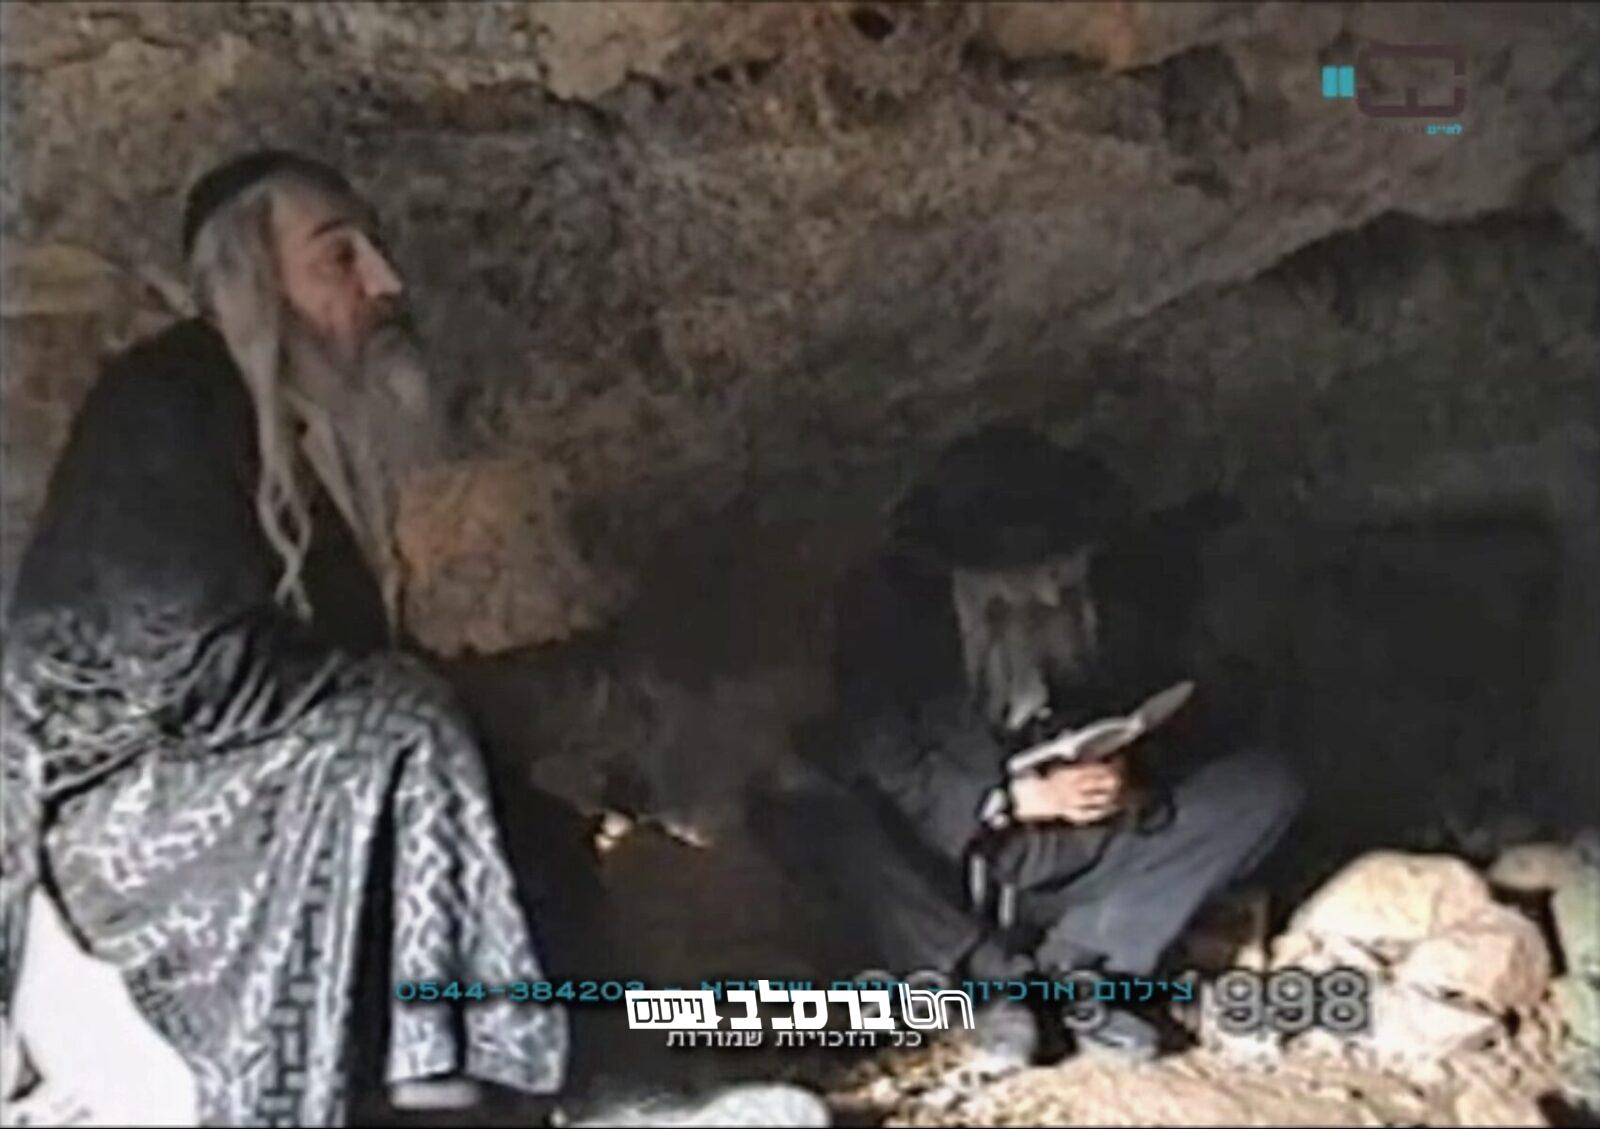 "רבנו של עולם": רבי שלמה יצחק שפירא במערת שמאי |◄